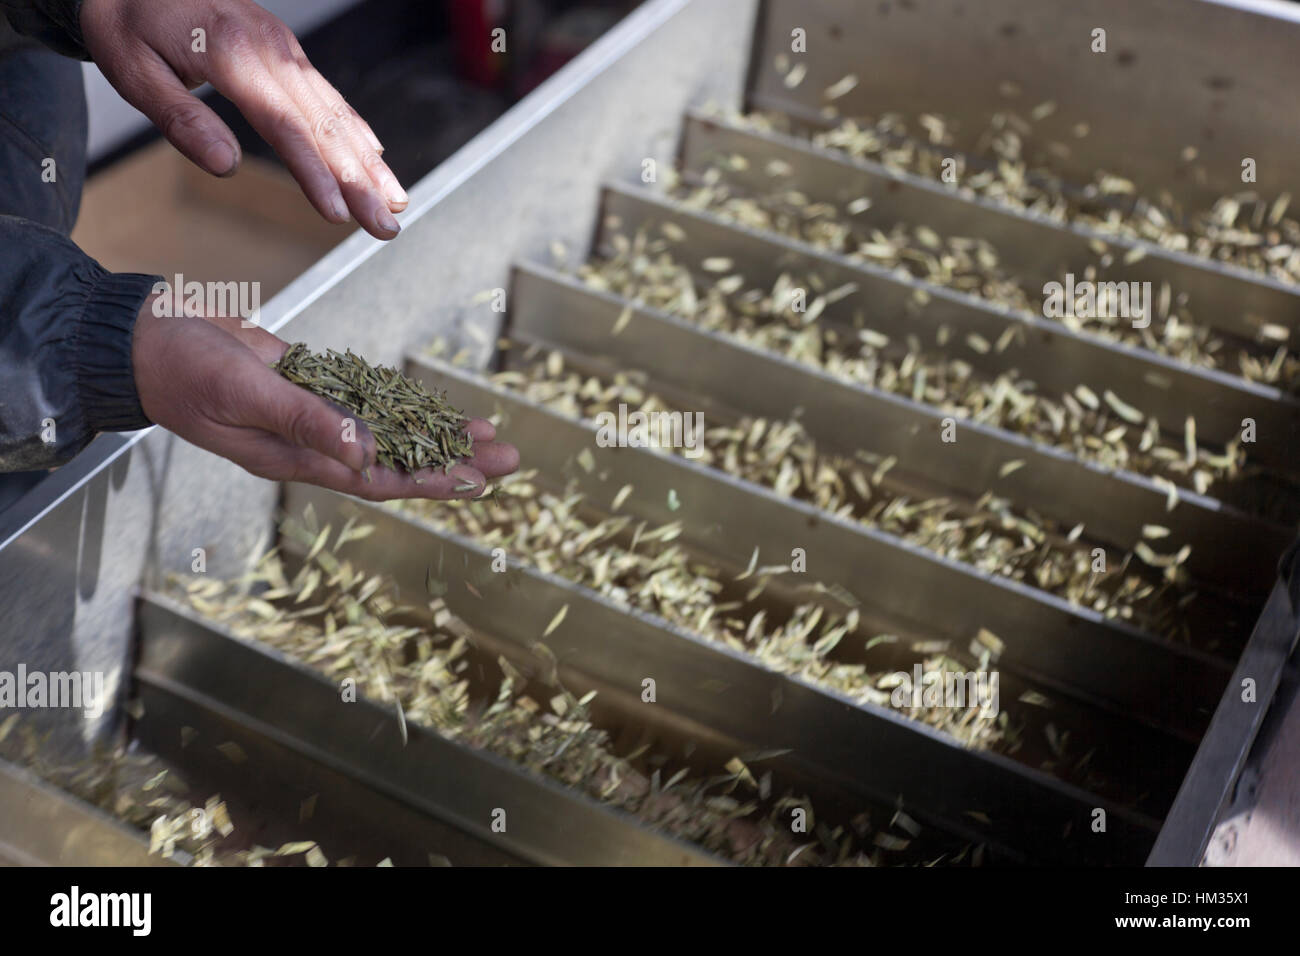 Un agricultor comprueba los cogollos de té está procesando o curado por descarte en un artilugio ranurado calentado eléctricamente. Foto de stock